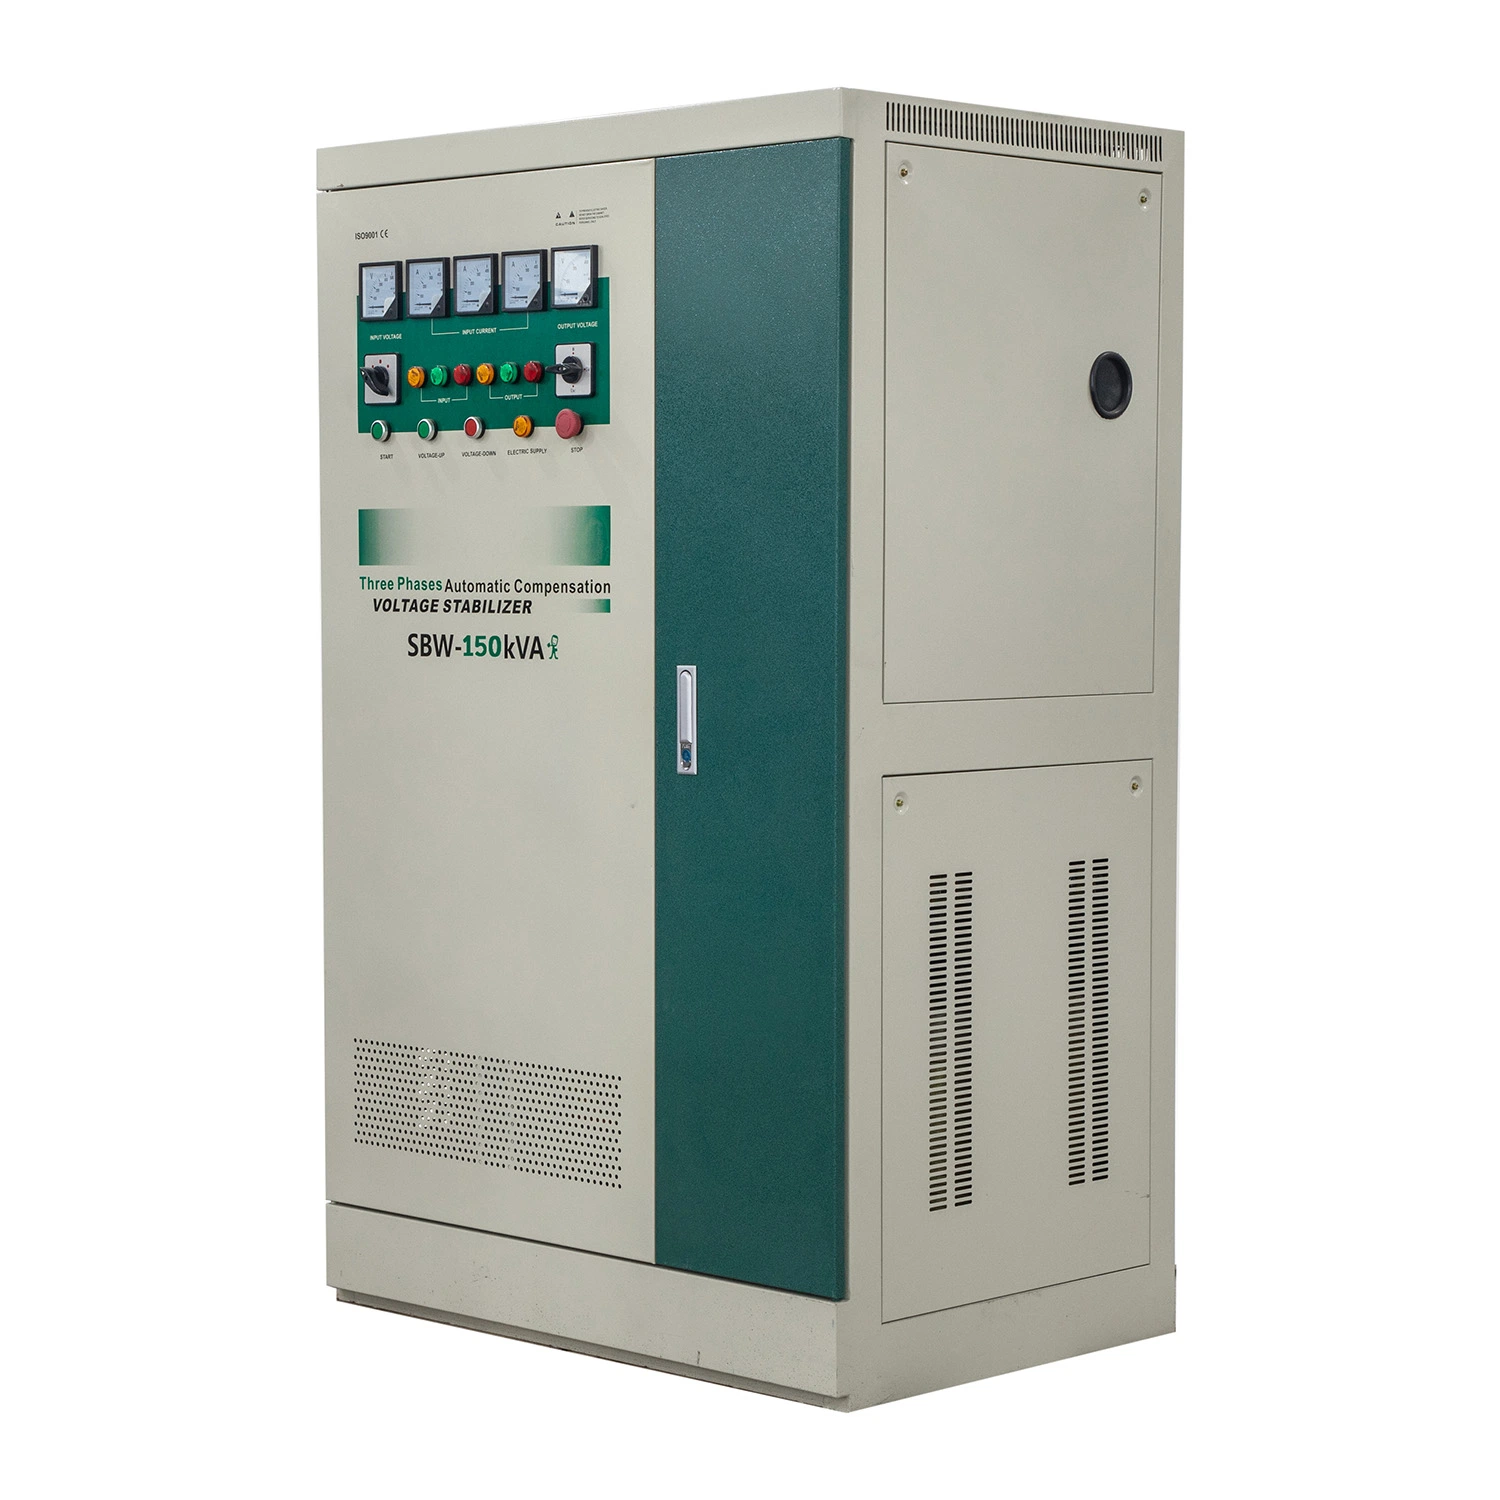 3 Phase 200kVA Compensating Industrial Voltage Stabilizer Regulator